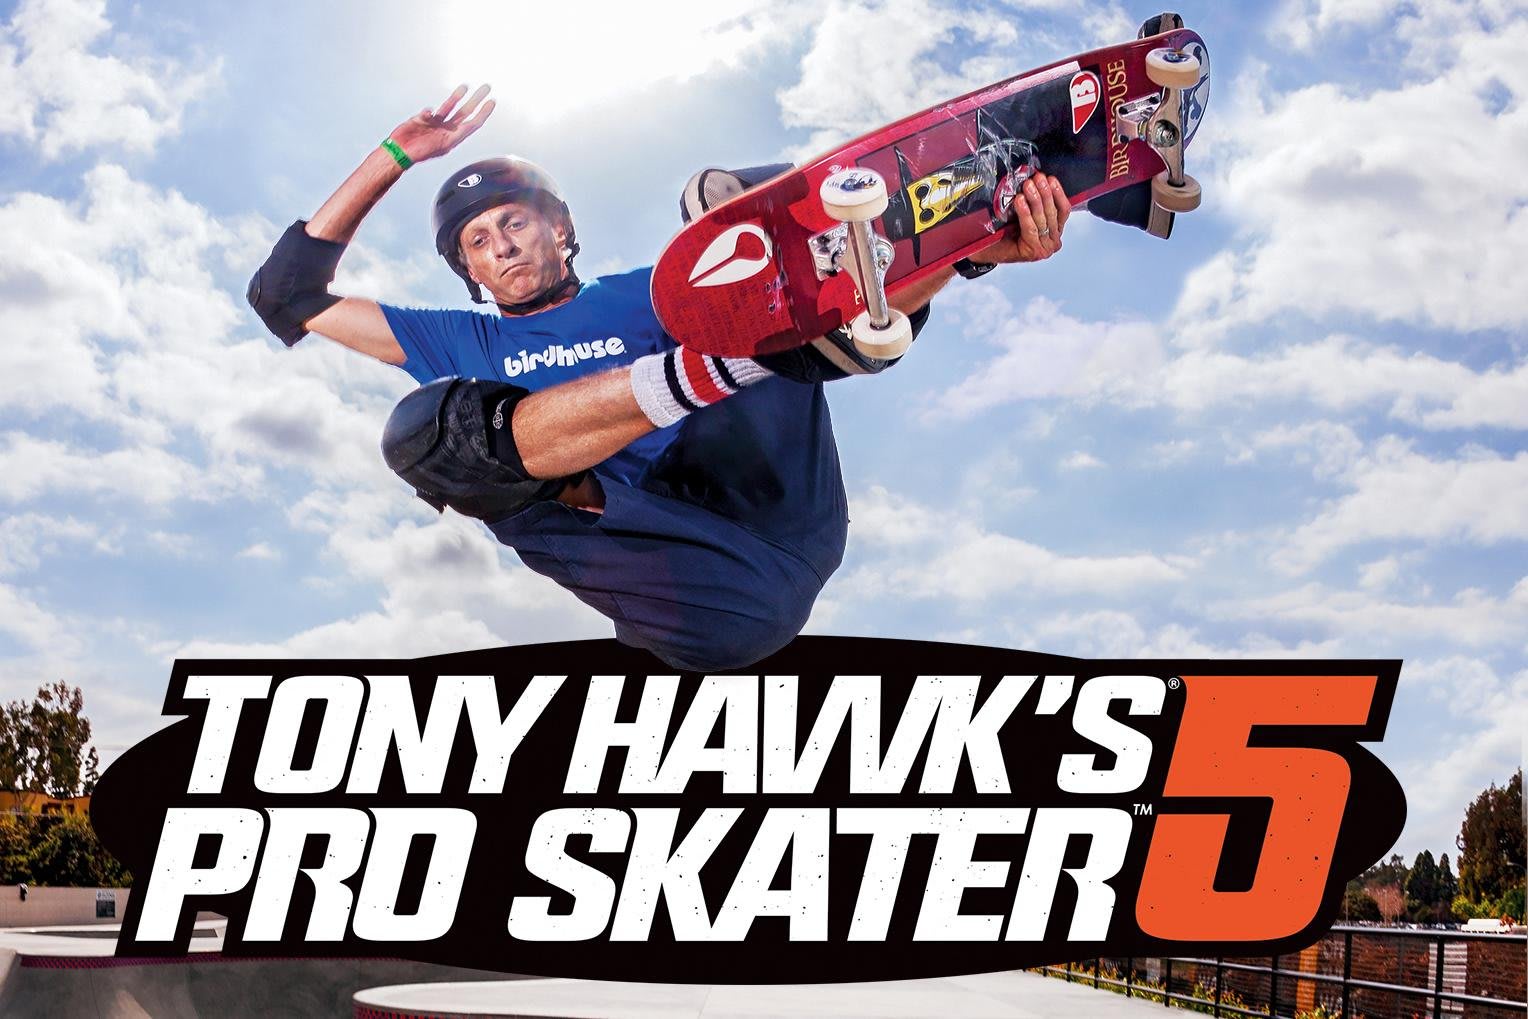 2015.7.29 | トニー・ホークが語る『Tony Hawk Pro Skater 5』| Games